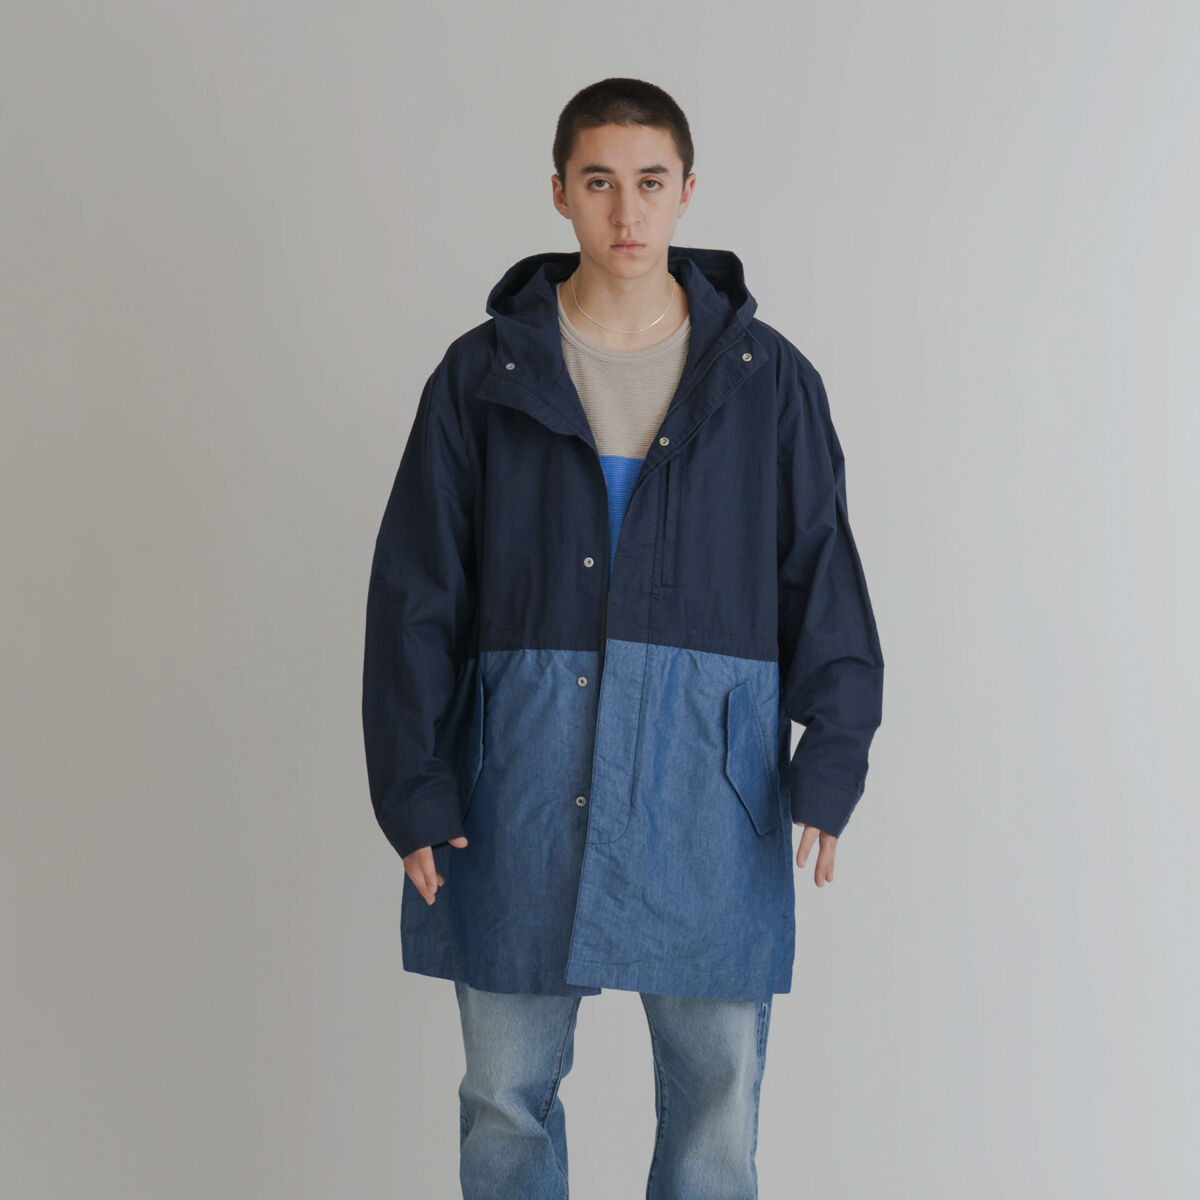 送料無料/プレゼント付♪ Levi's リーバイス コート メンズ アウター BERNAL HEIGHTS OVERSHIRT UNISEX  Short coat blue denim